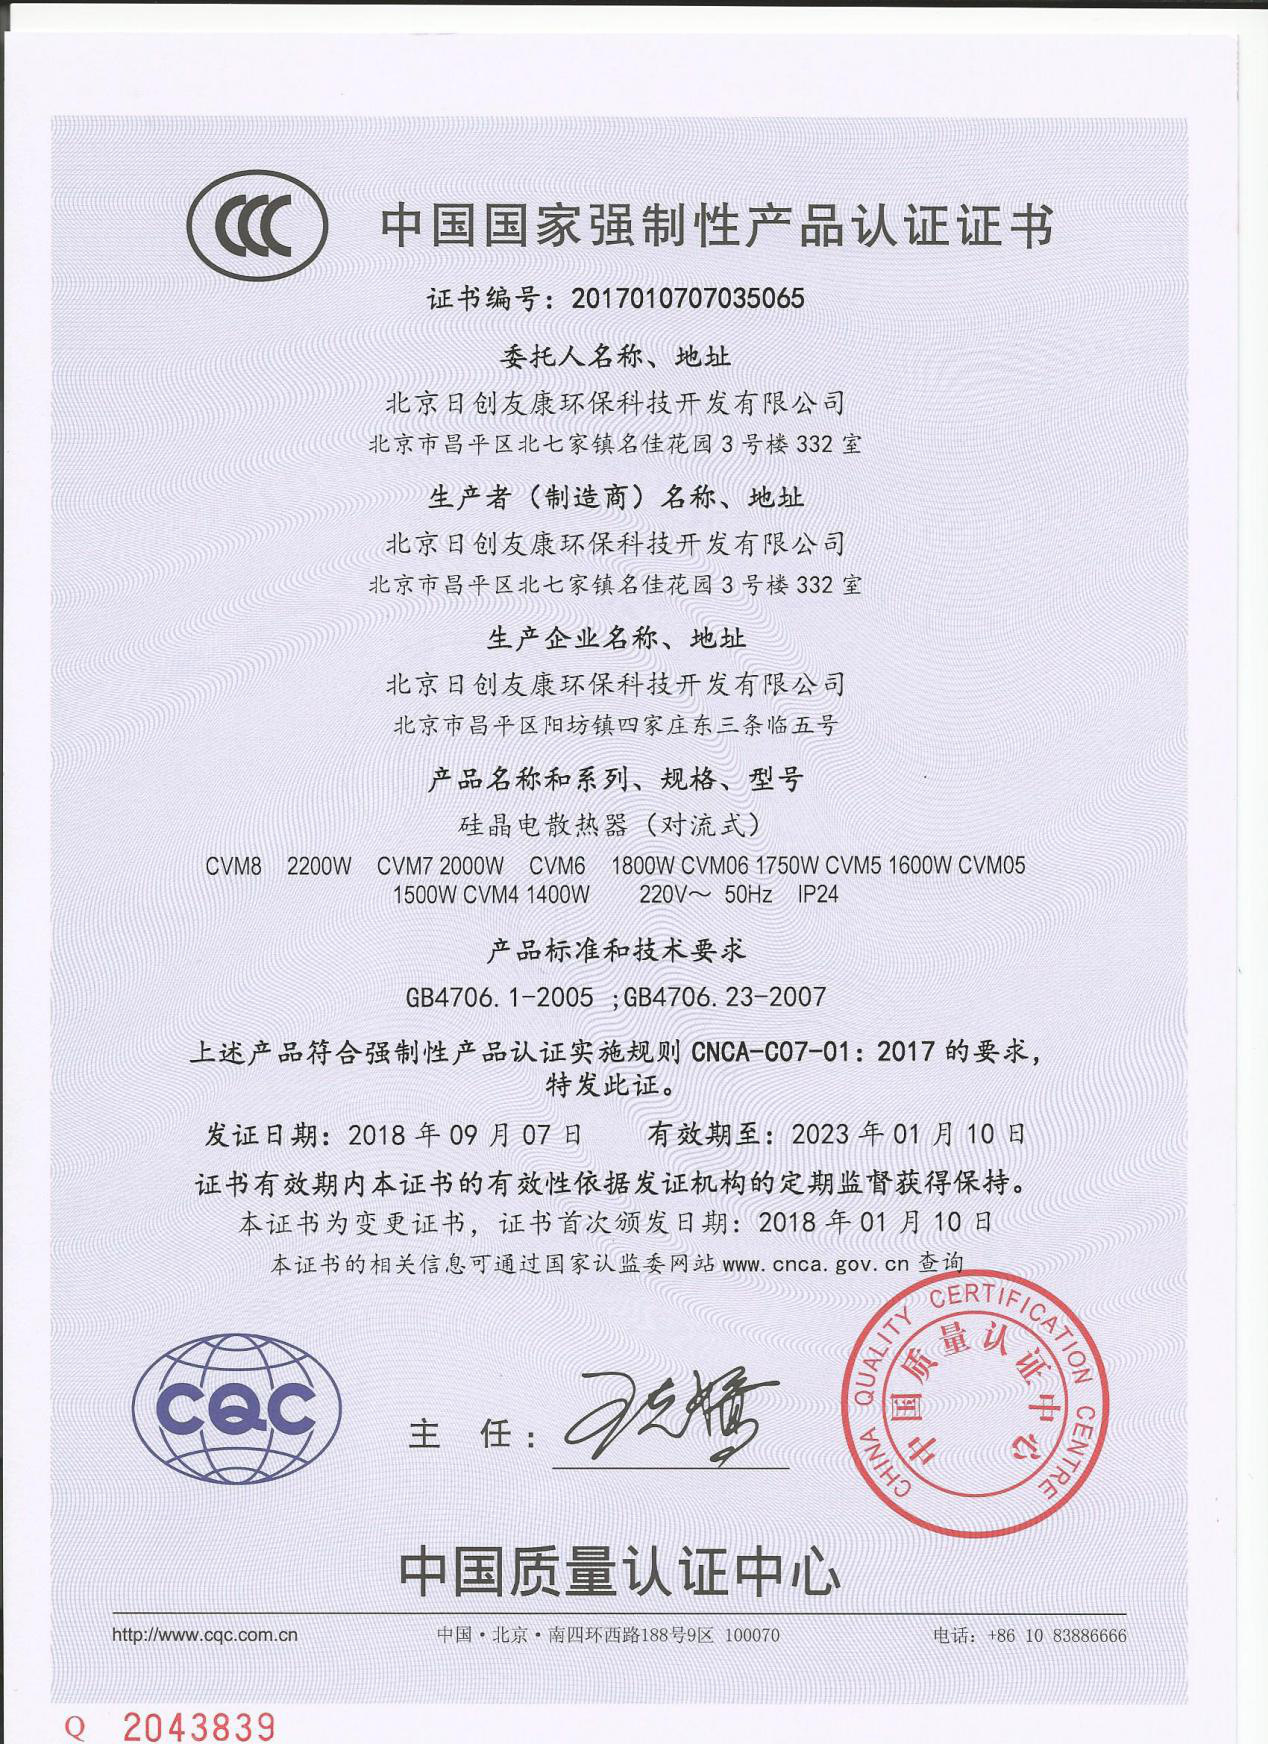 硅晶电暖器CCC证书-2